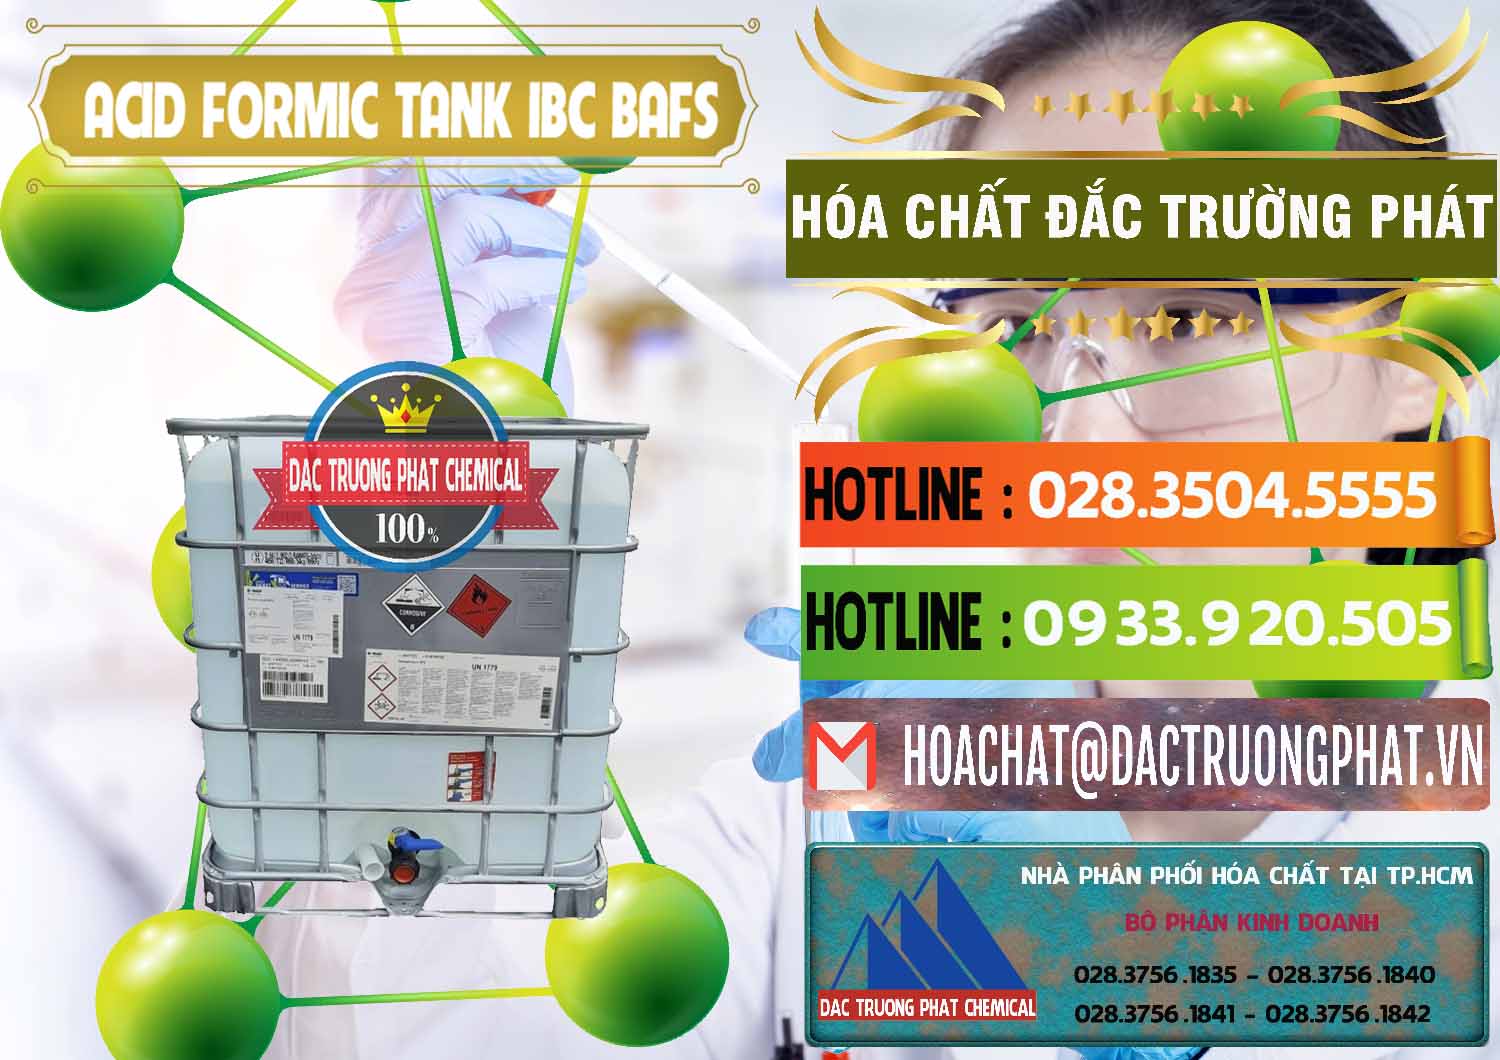 Nơi chuyên bán - phân phối Acid Formic - Axit Formic Tank - Bồn IBC BASF Đức - 0366 - Chuyên phân phối và bán hóa chất tại TP.HCM - cungcaphoachat.com.vn